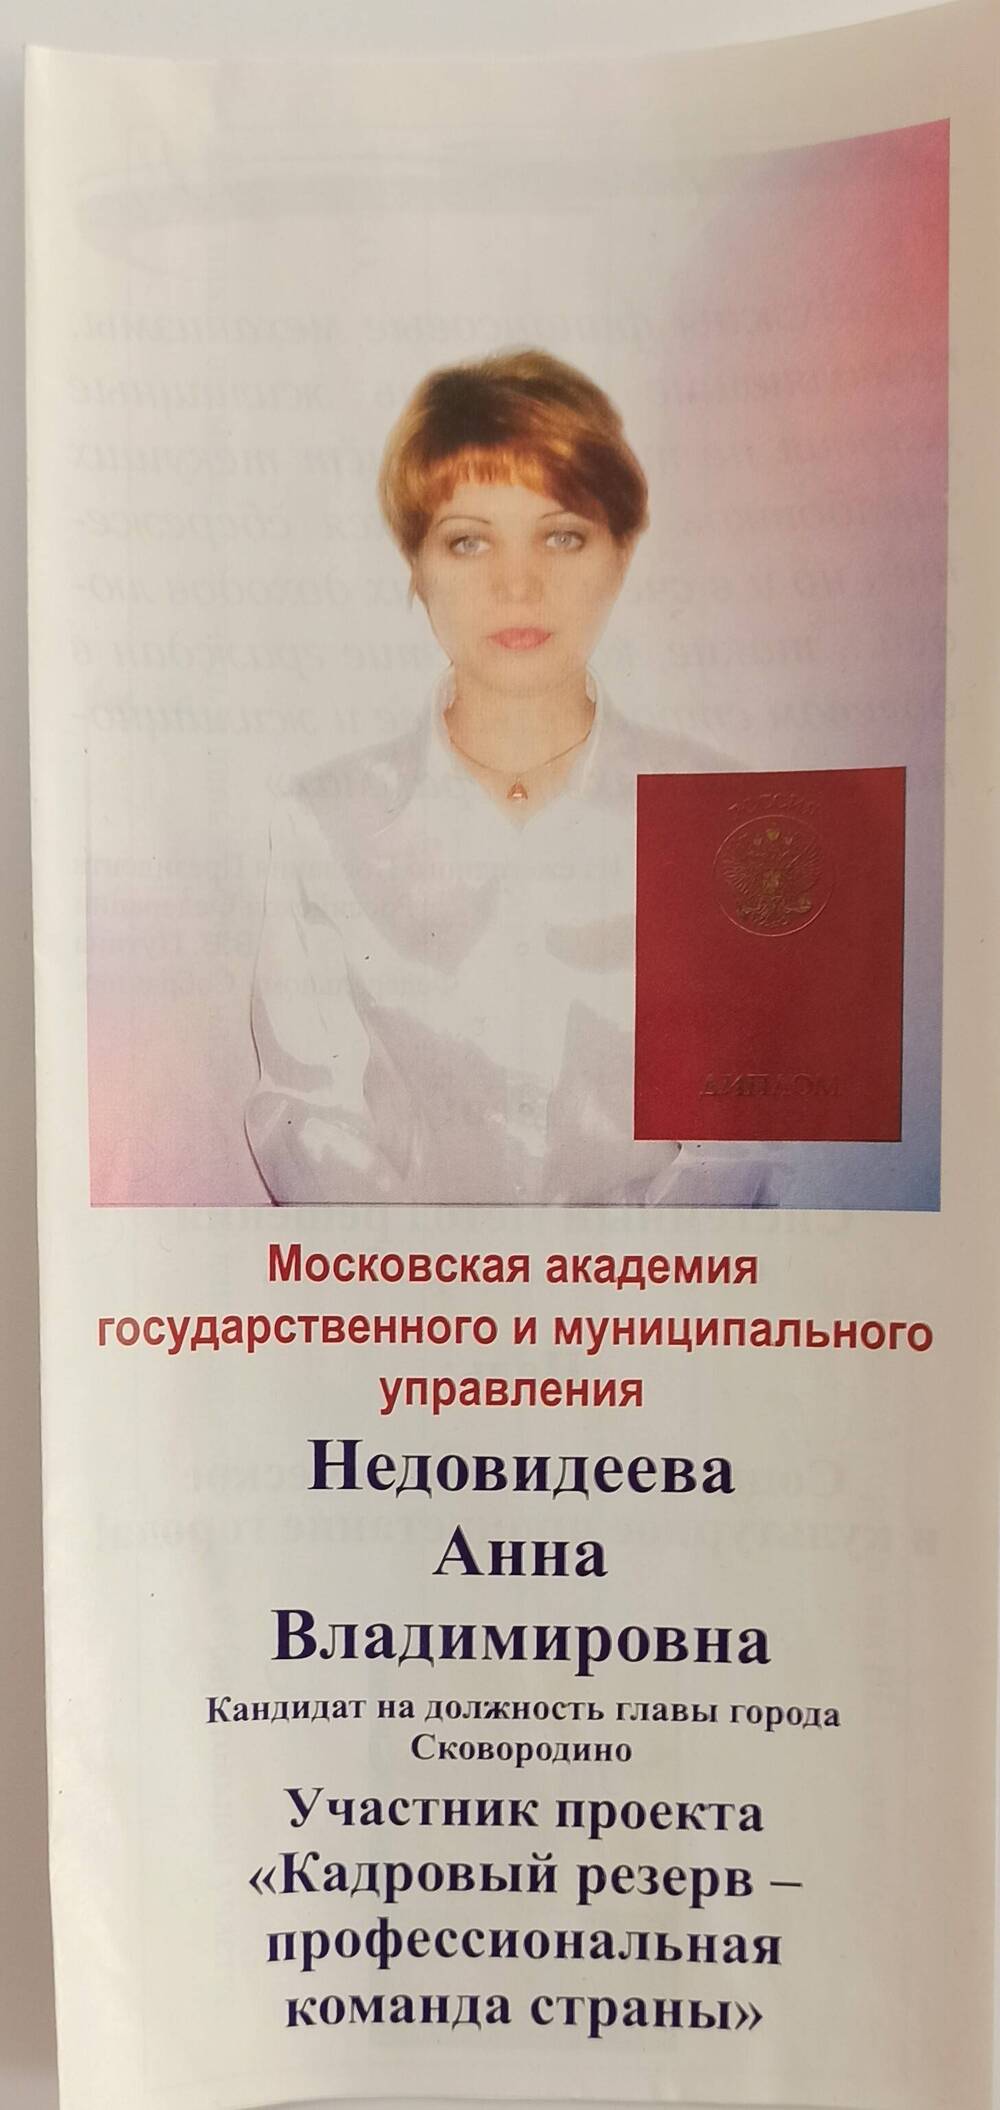 Агитационный буклет кандидата на должность главы г. Сковородино Недовидеевой Анны Владимировны.